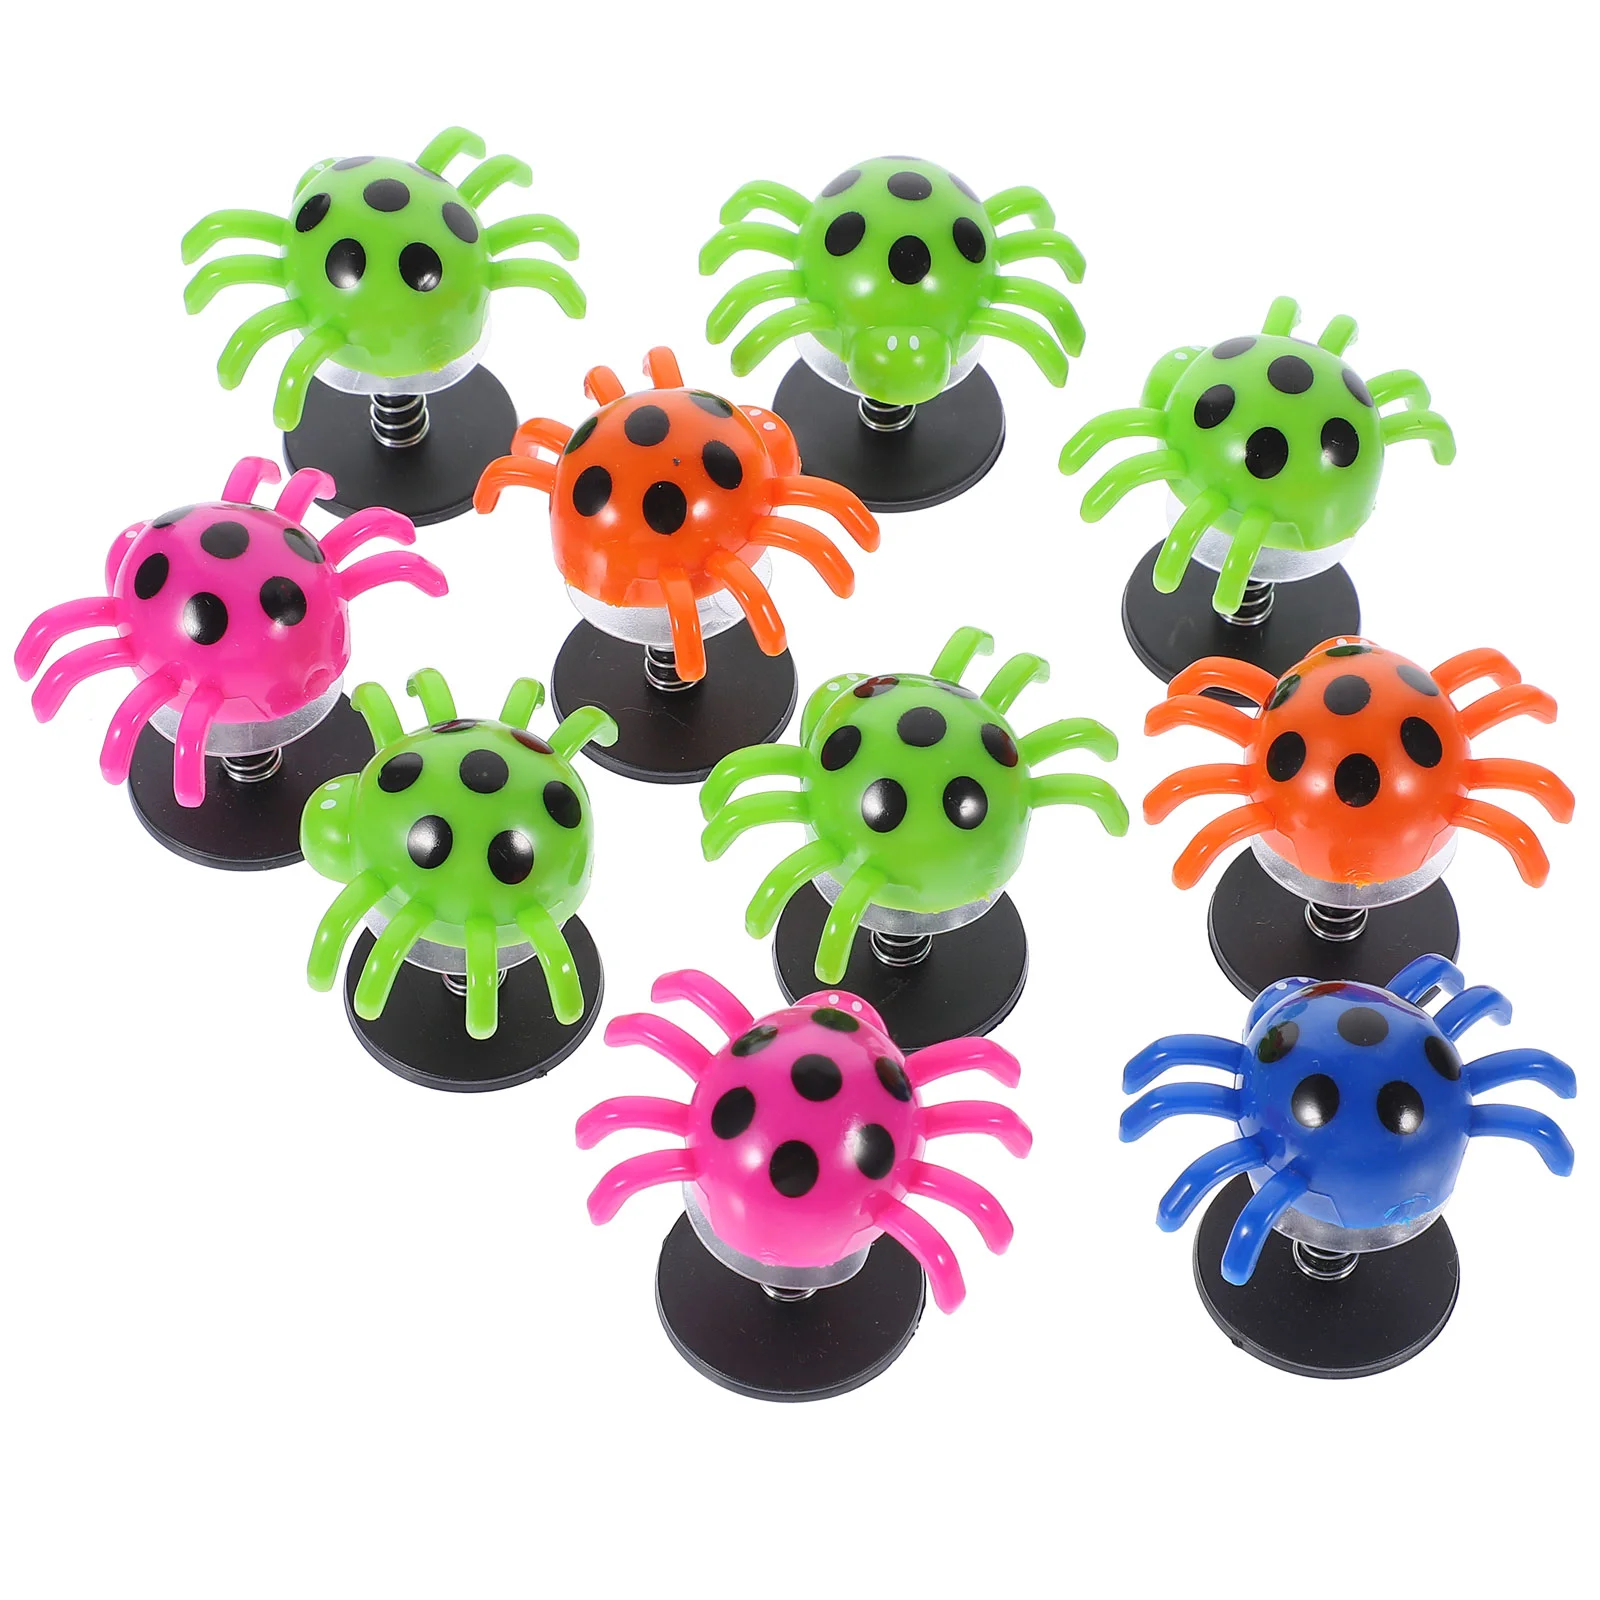 

10 упаковок пауков для прыжков в форме пауков